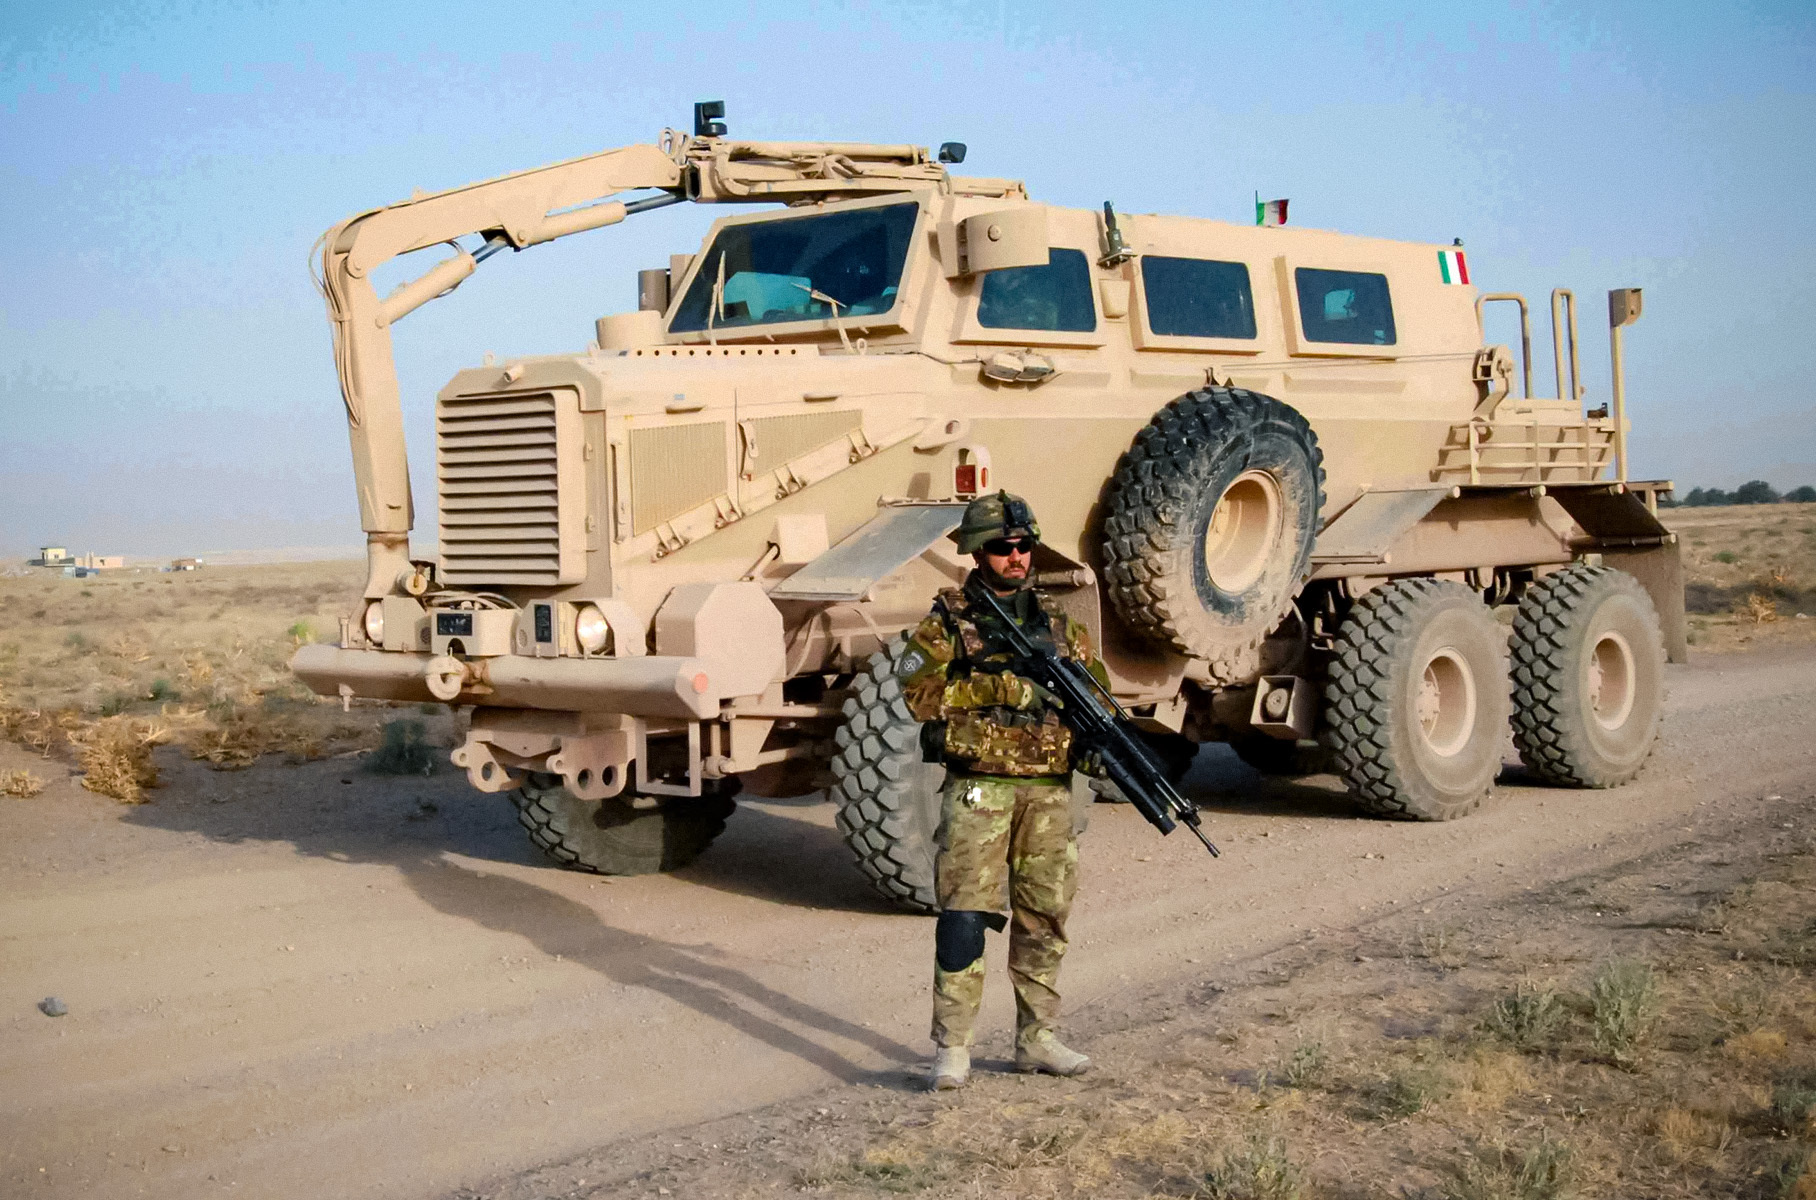 Армейский боевой автомобиль. десятка военных машин с самыми мощными двигателями. buffalo - автомобиль с противоминной защитой